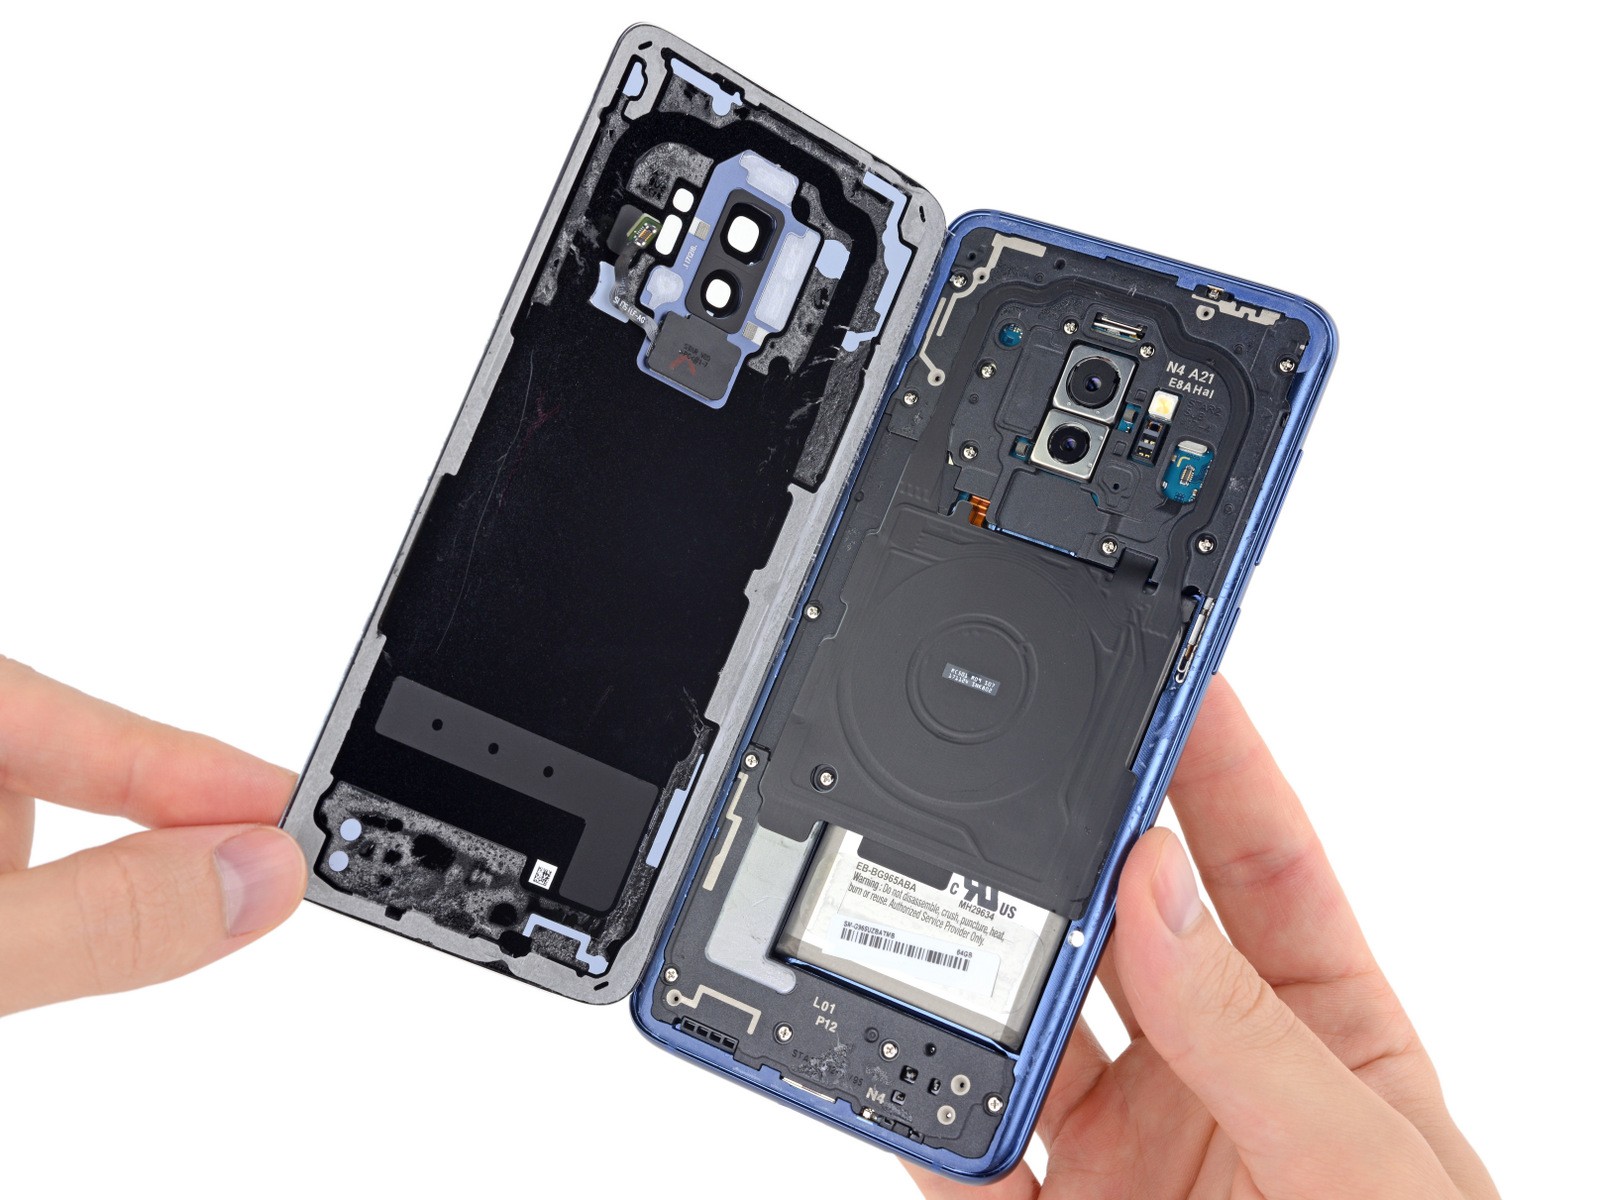 Compare Asus Zenfone Max M1 Vs Moto G8 Power Lite Vs